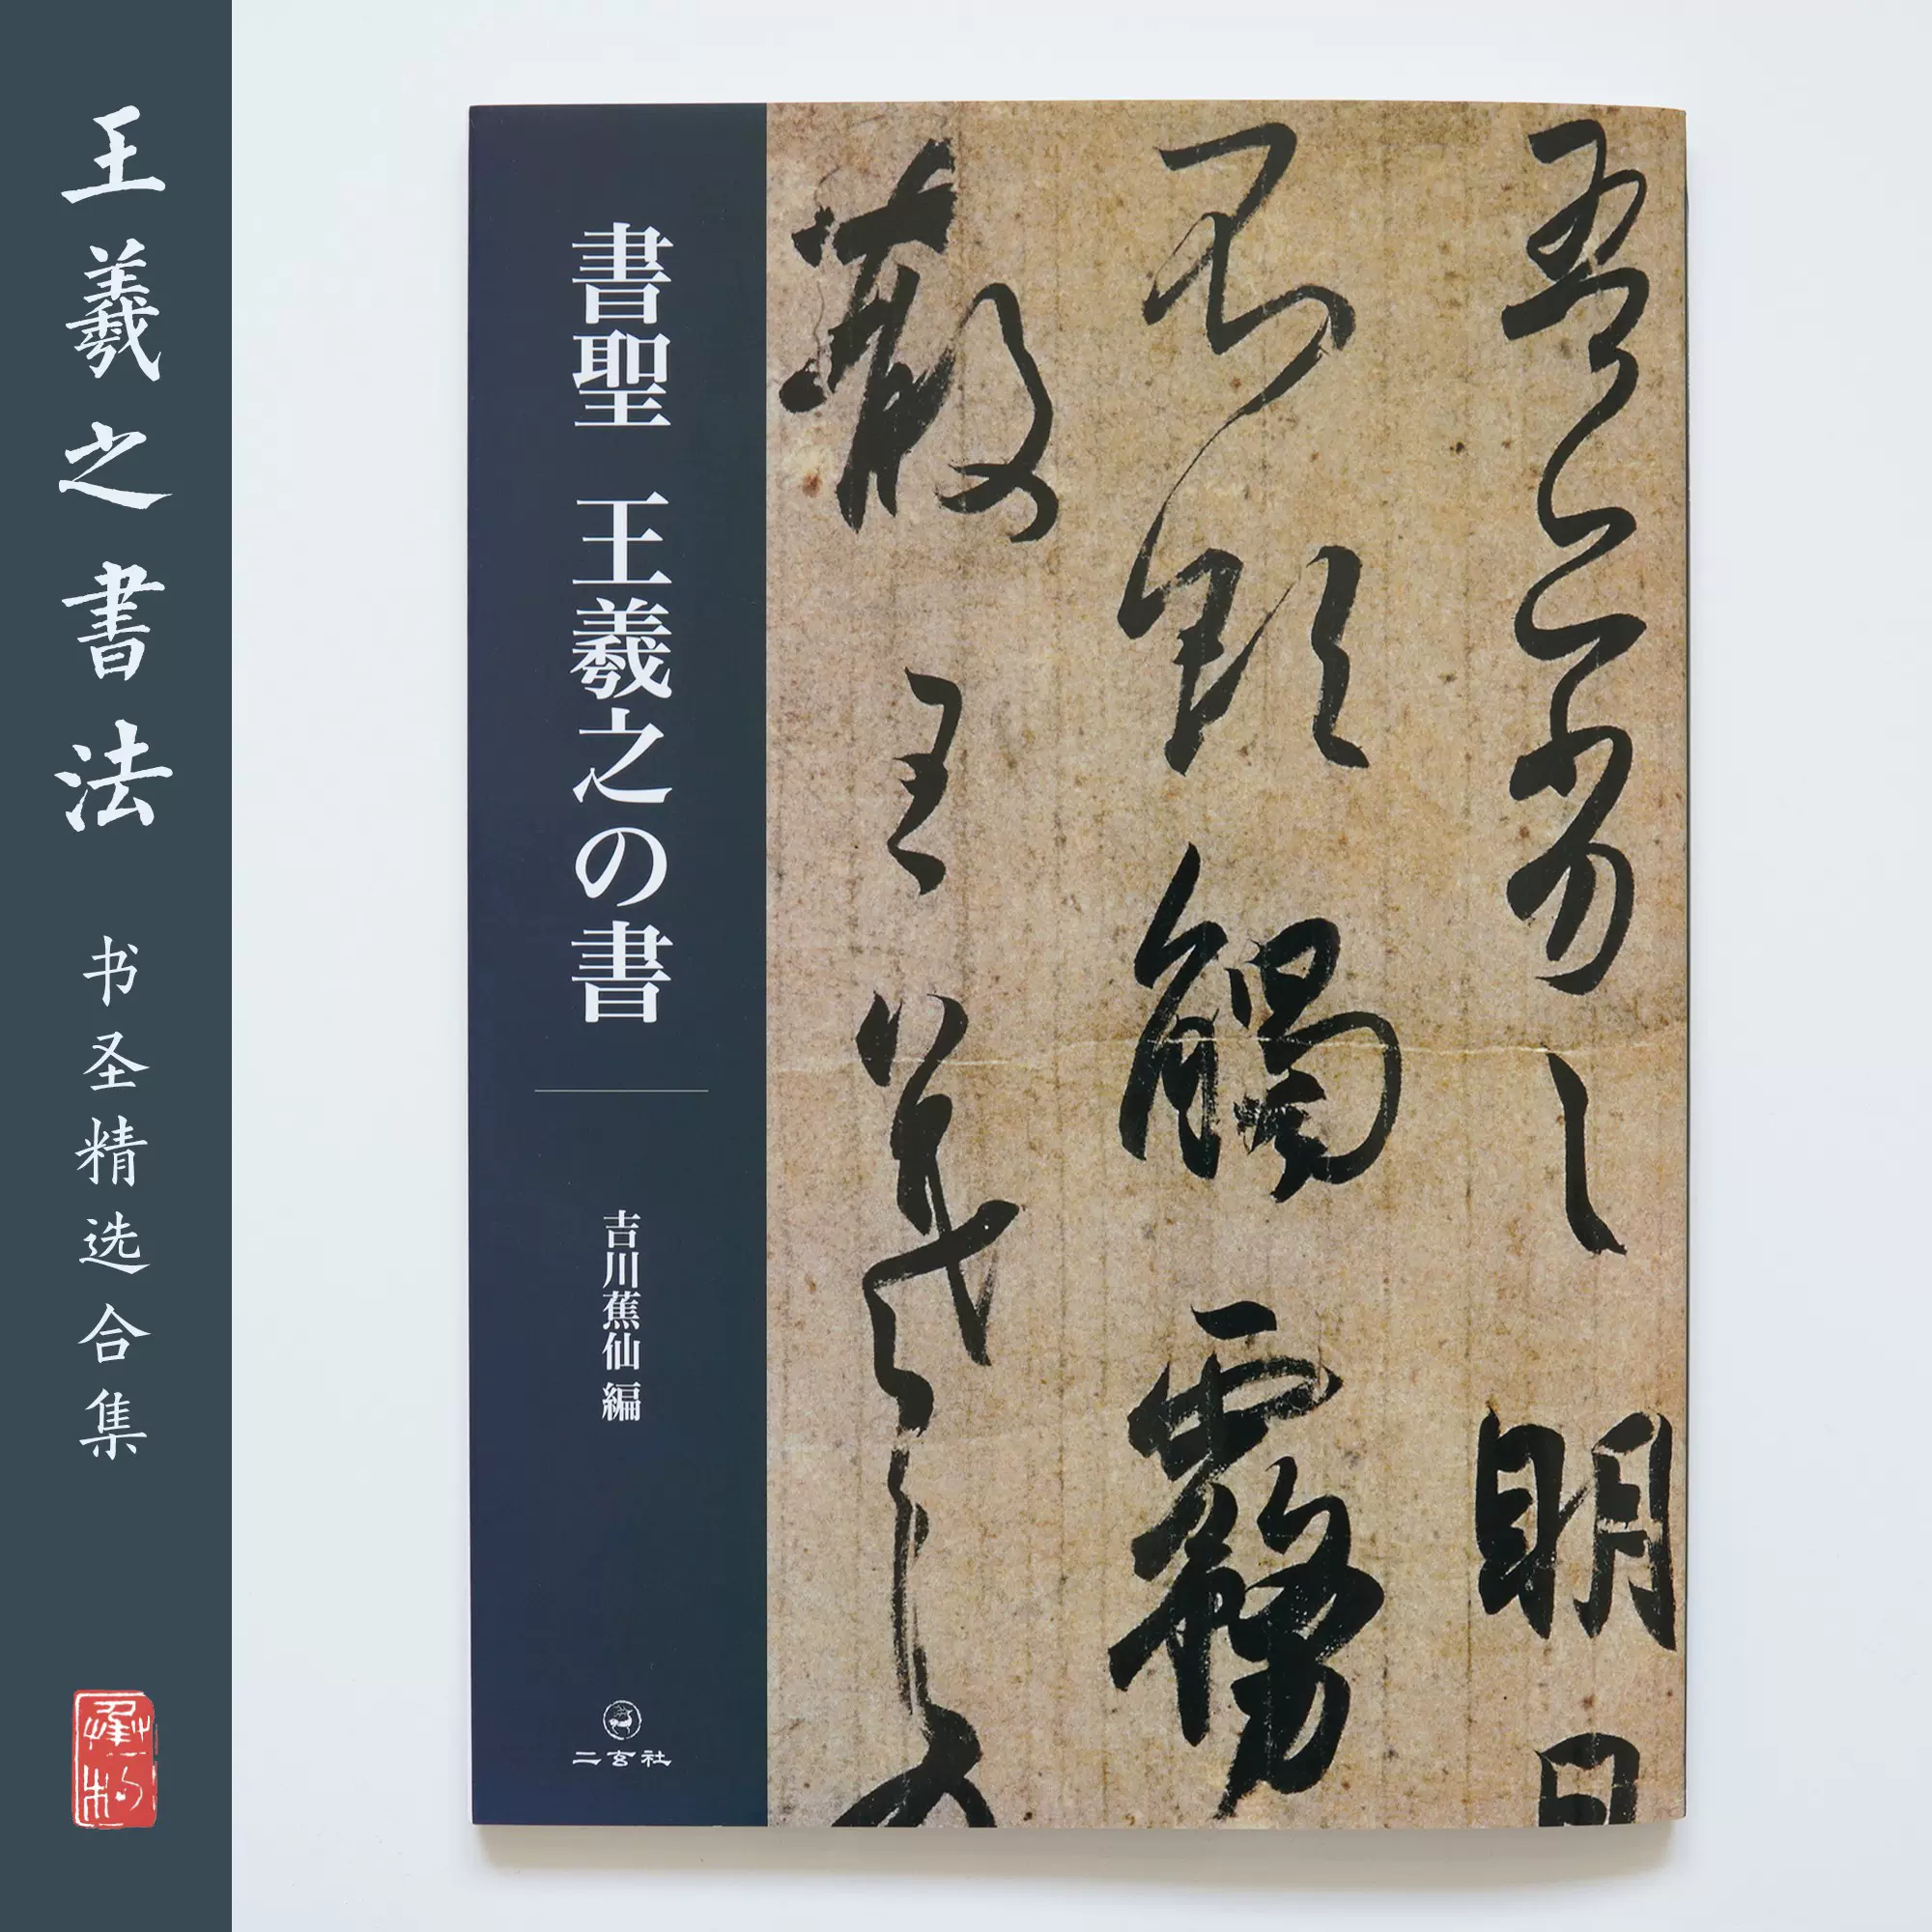 二玄社王羲之的书书圣王羲之的法书日本进口正品书店-Taobao